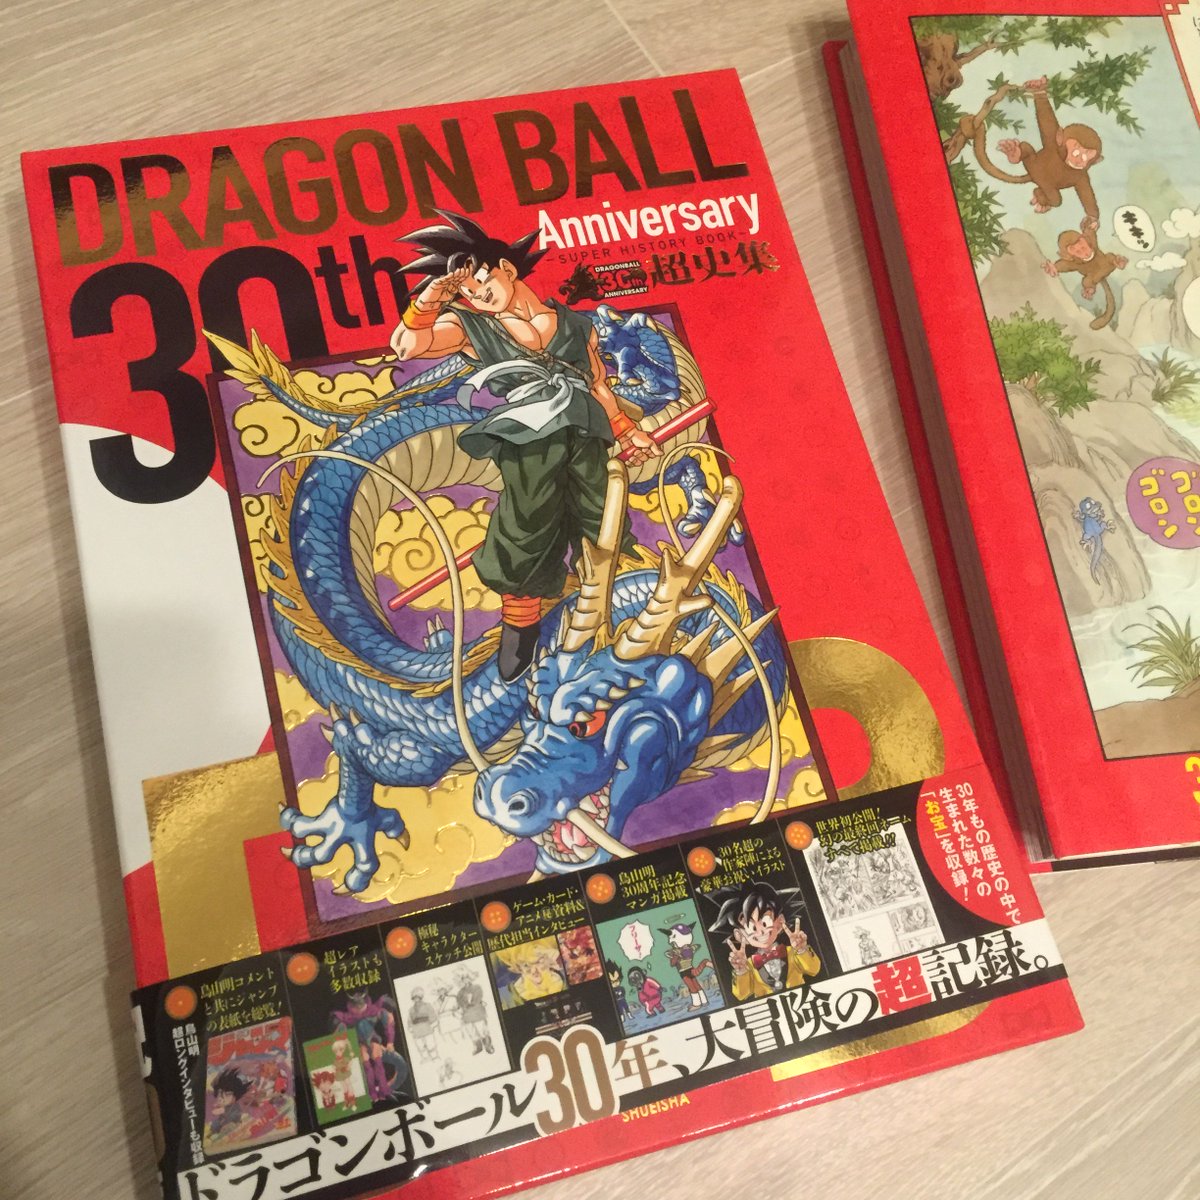 ট ইট র 青海 亮太 Ryota Aomi 30th Anniversary ドラゴンボール超史集 をゲット 懐かしさと鳥山先生の凄さに鳥肌たちます ドラゴンボールもドラクエと同じ30周年 T Co Rco38bjnoa